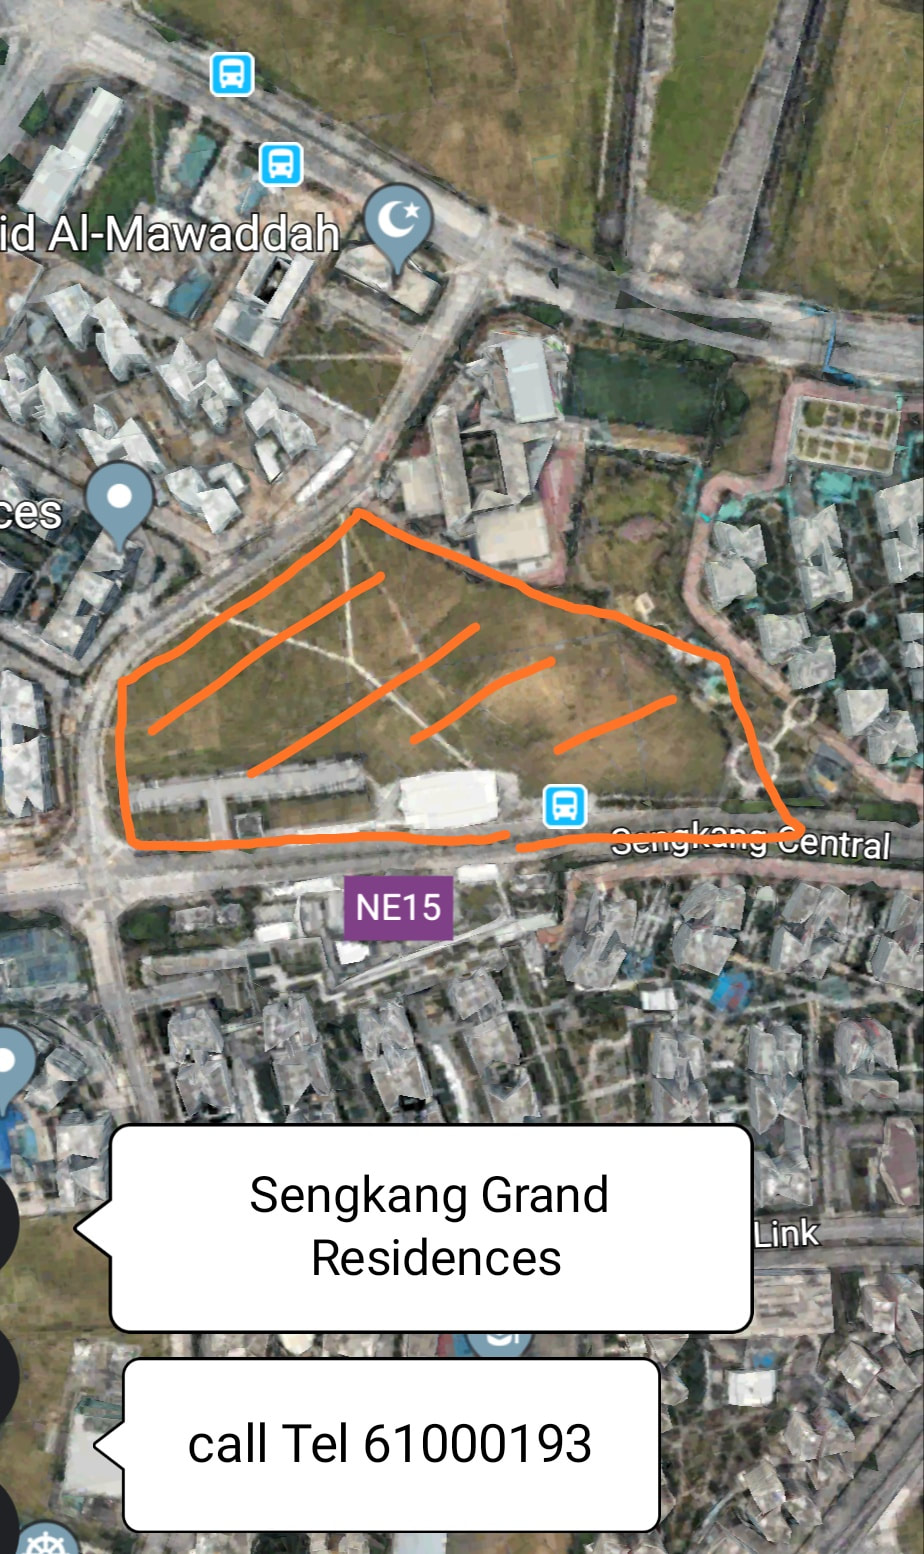 Sengkang Grand Showflat image from http://singnewhomes.com/sengkang-grand-residences/